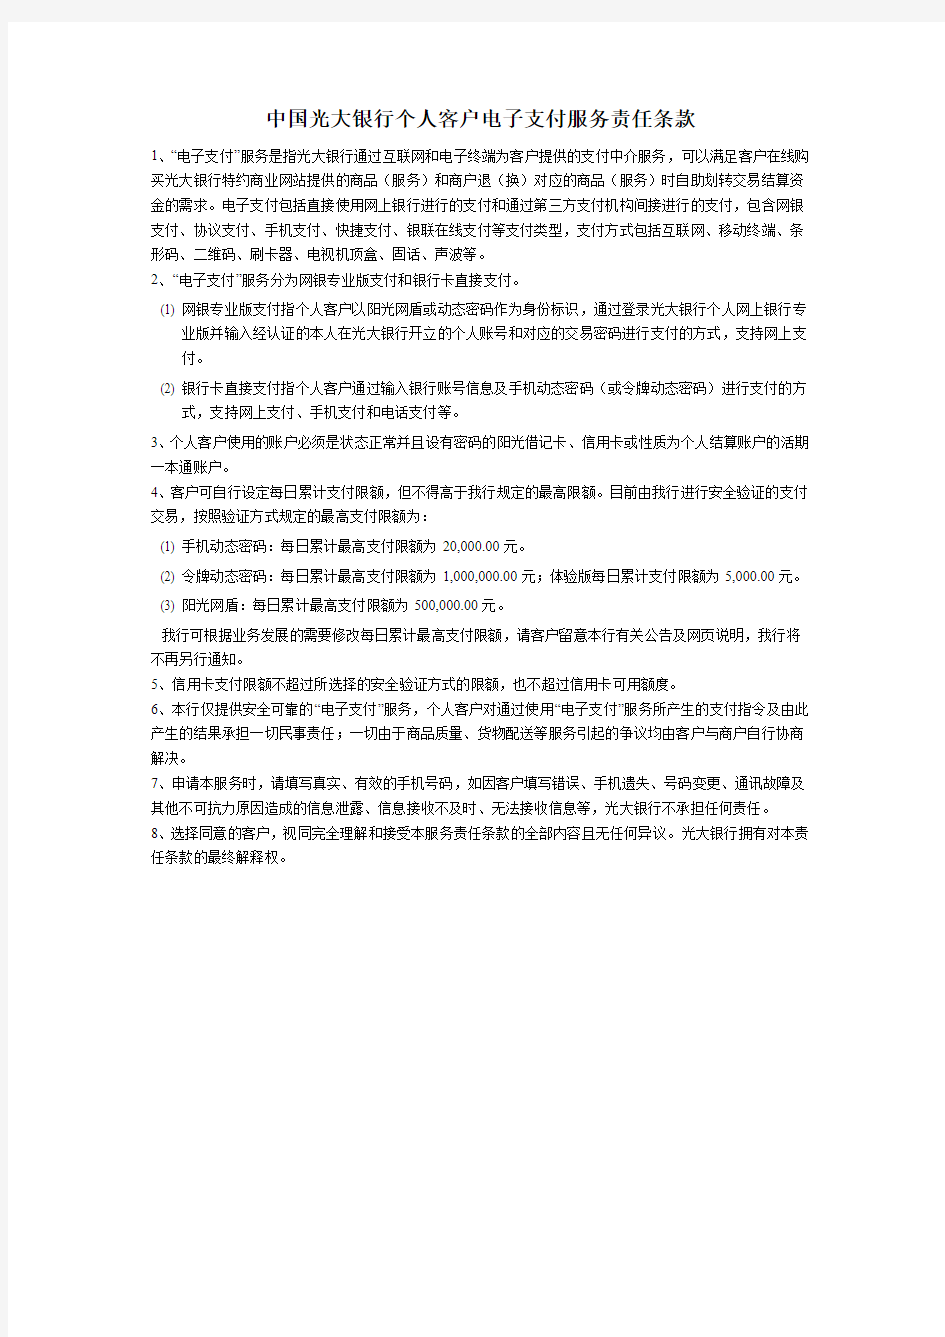 中国光大银行个人客户电子支付服务责任条款